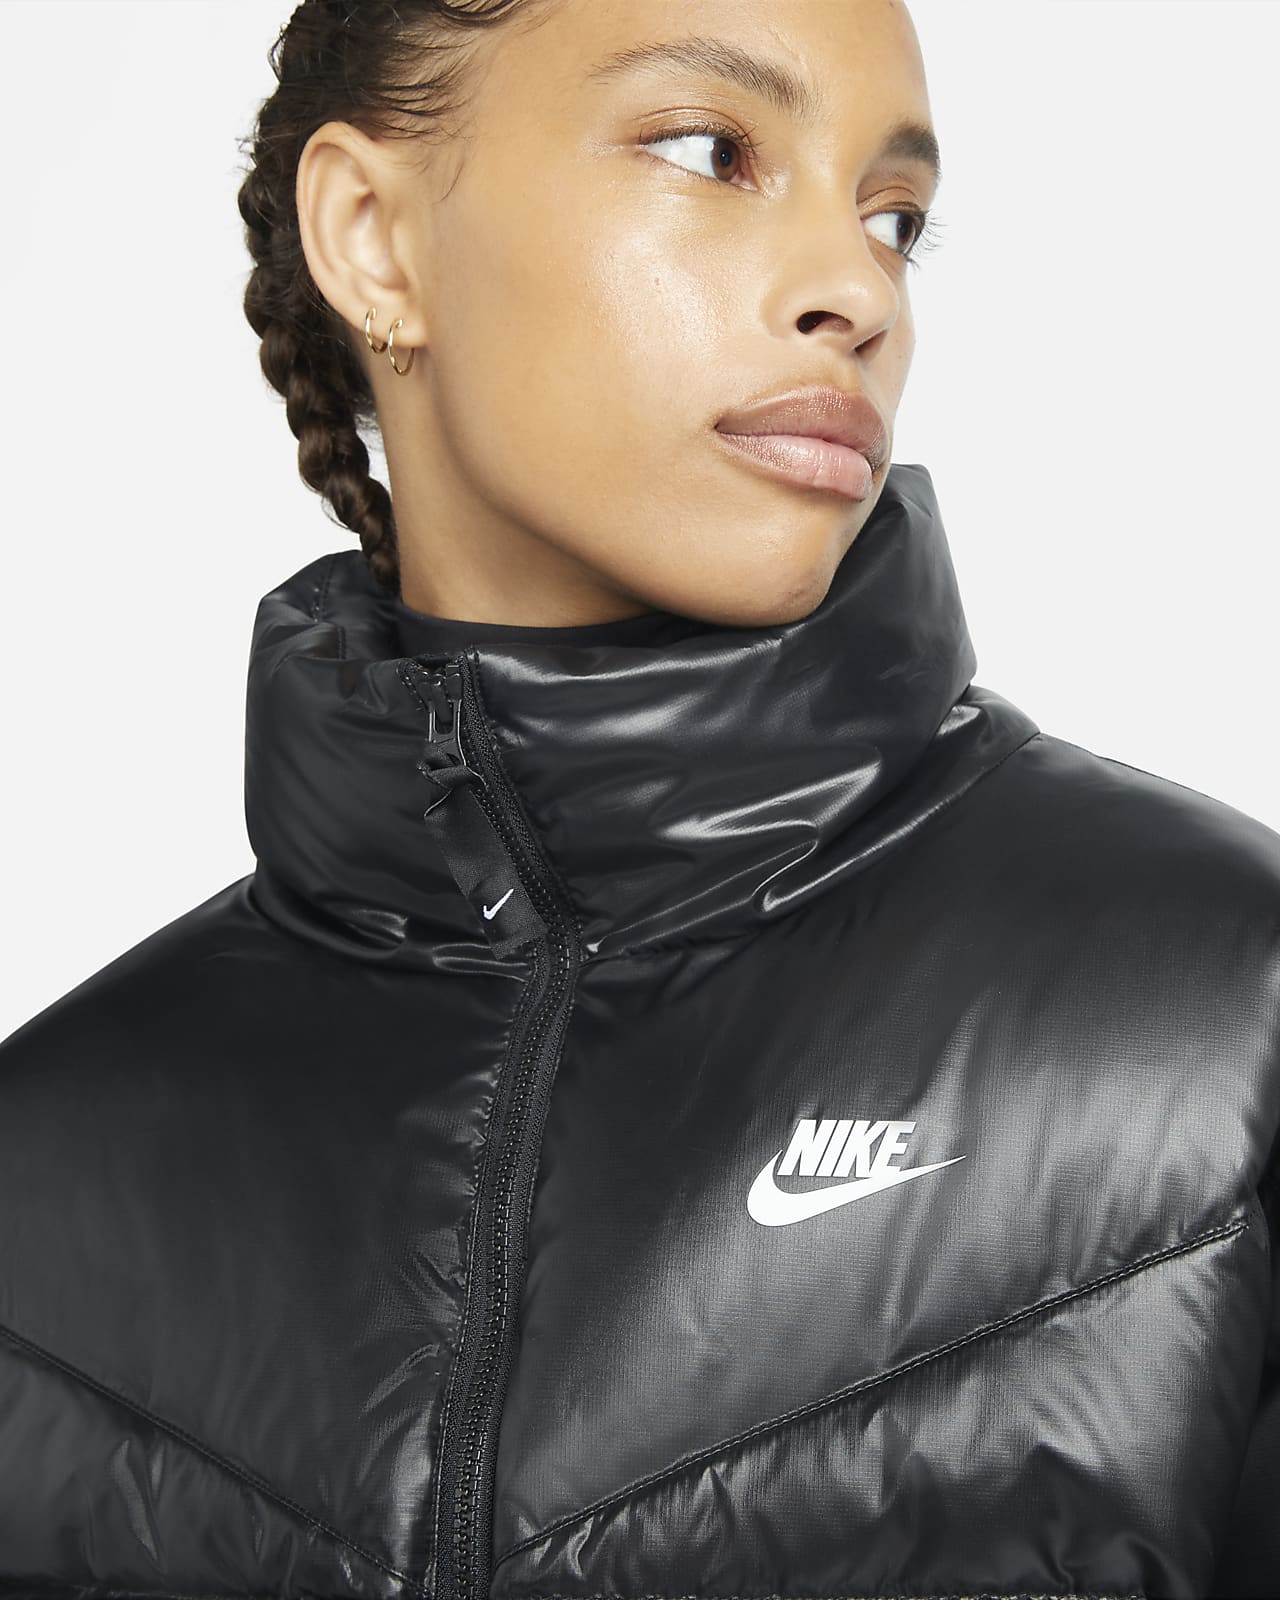 Nike Sportswear Women's Jacket. Nike LU